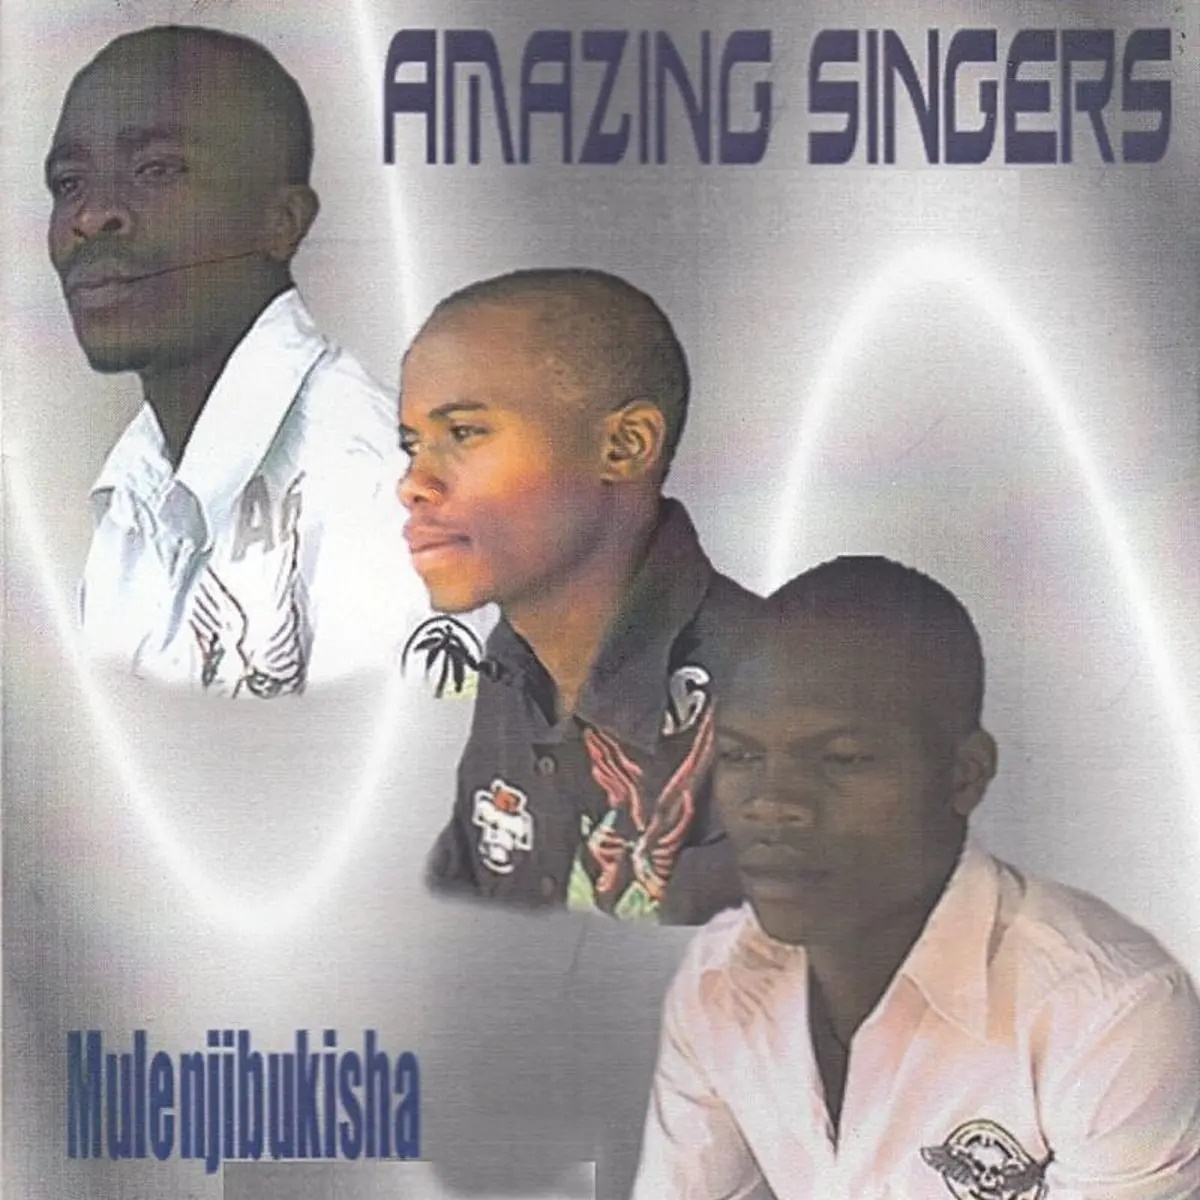 Amazing Singers